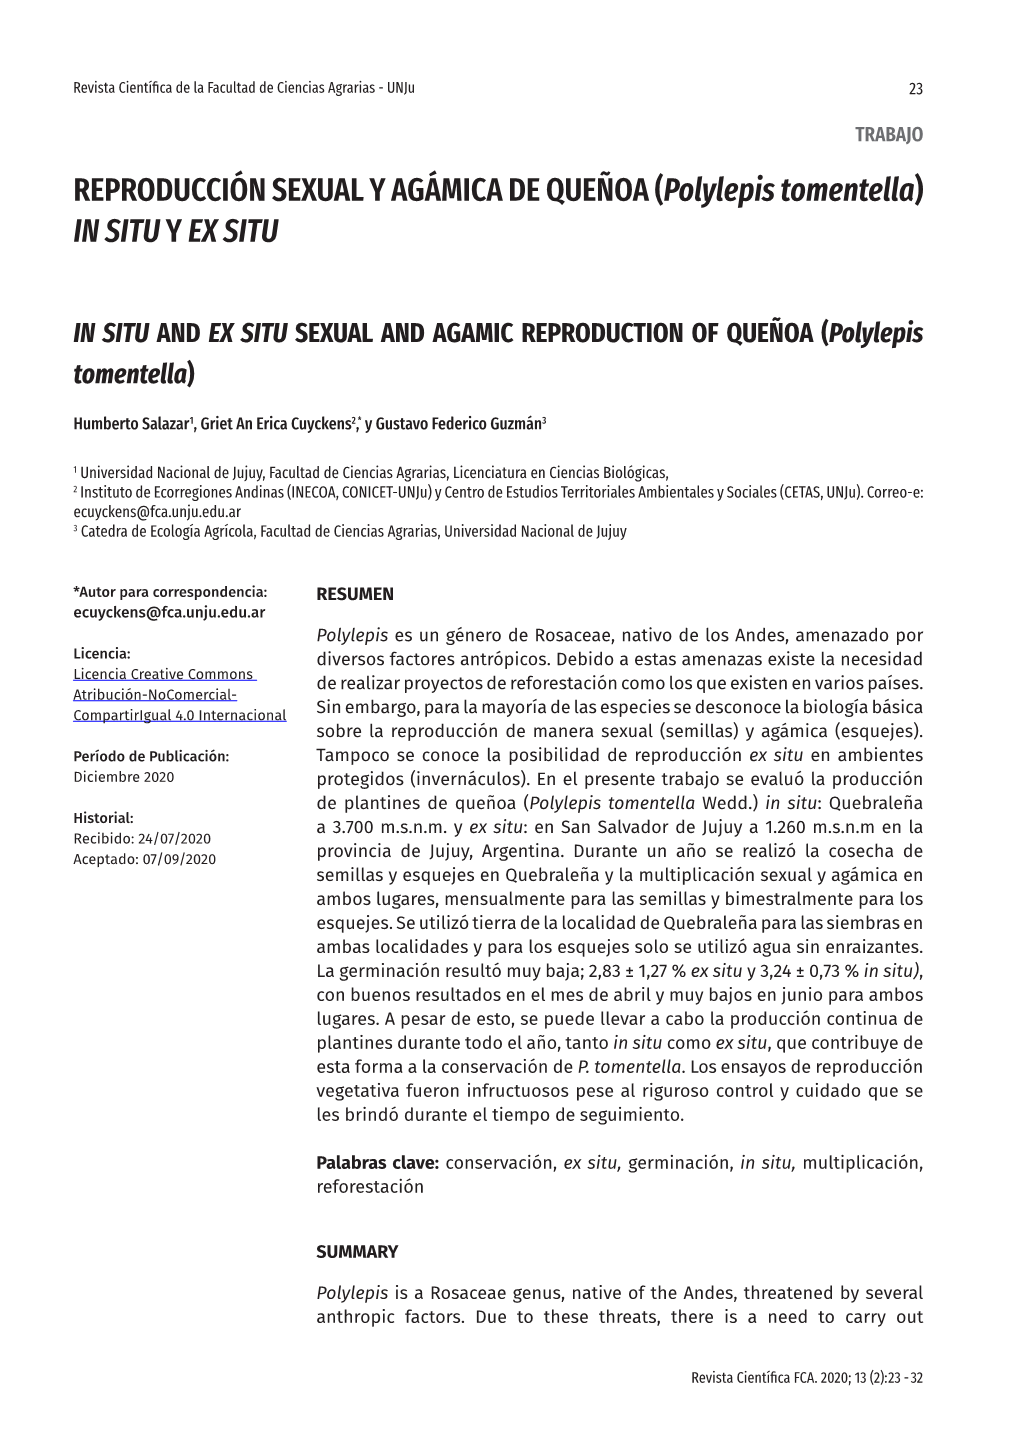 REPRODUCCIÓN SEXUAL Y AGÁMICA DE QUEÑOA (Polylepis Tomentella) in SITU Y EX SITU